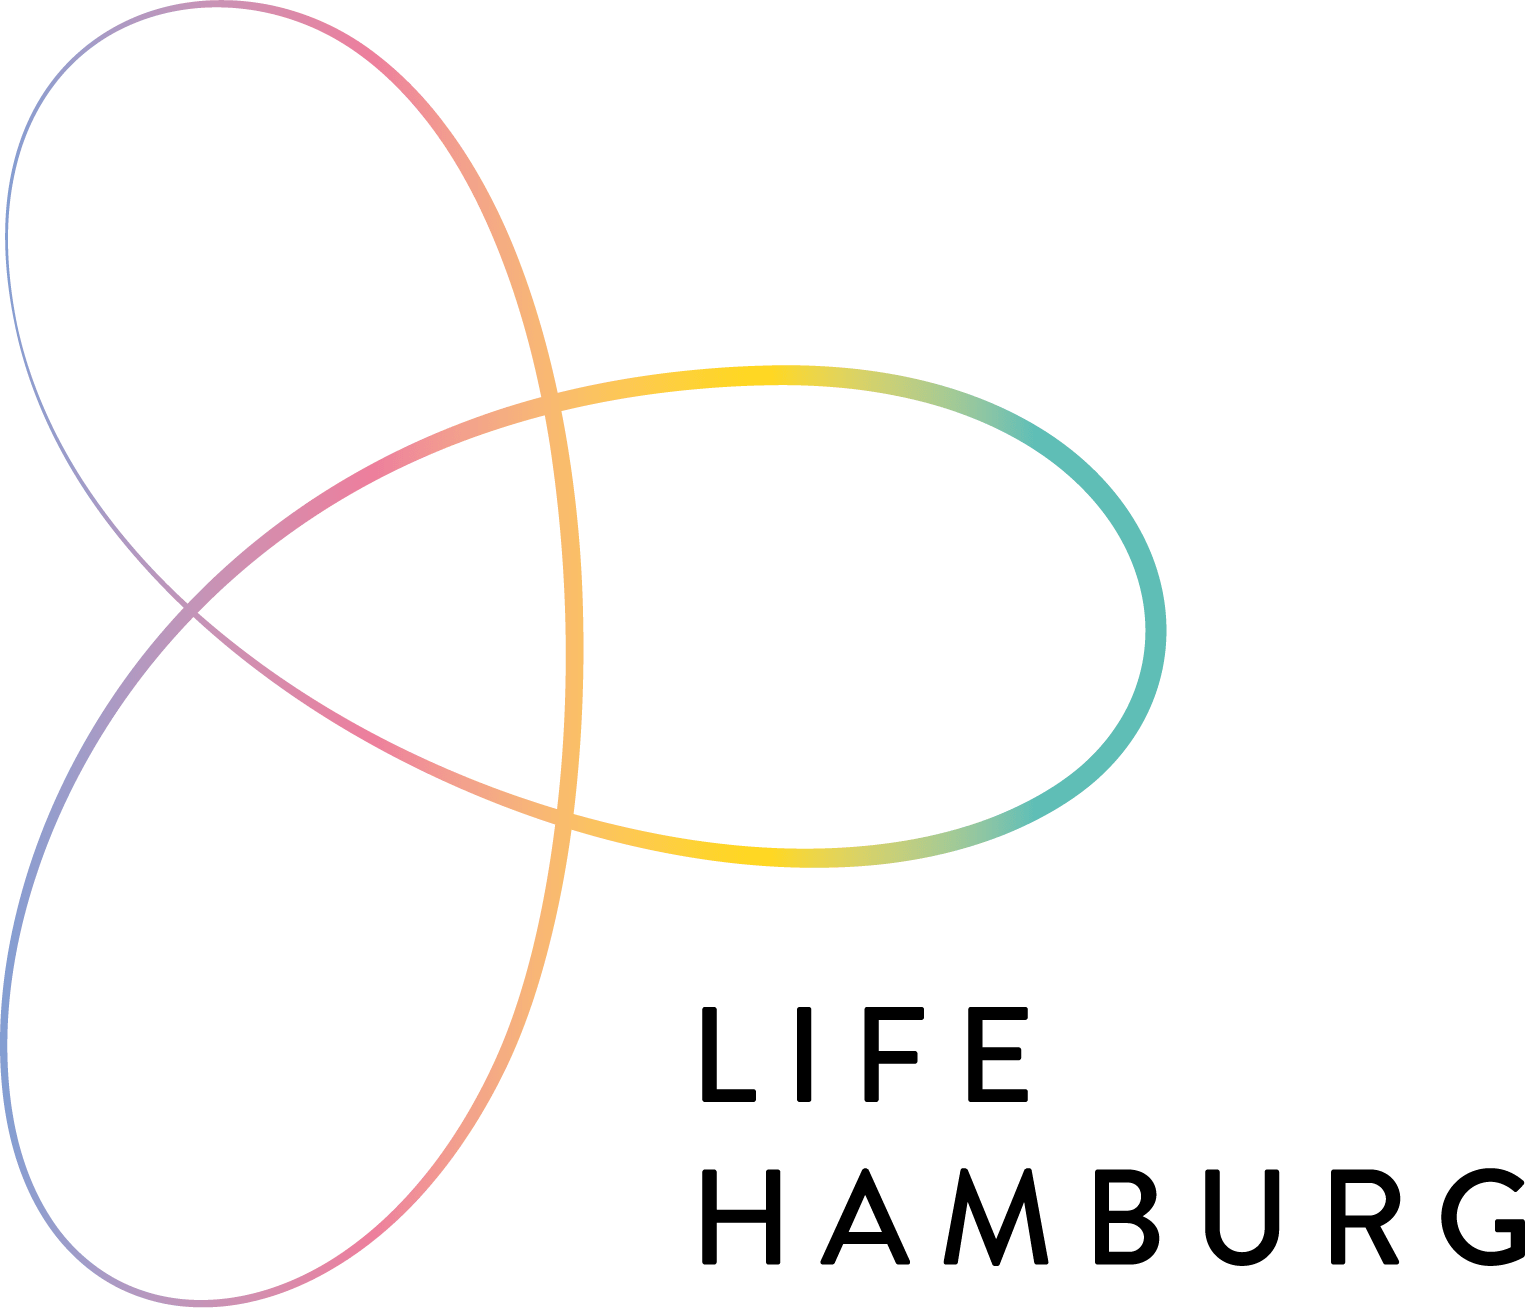 LIFE HAMBURG logo